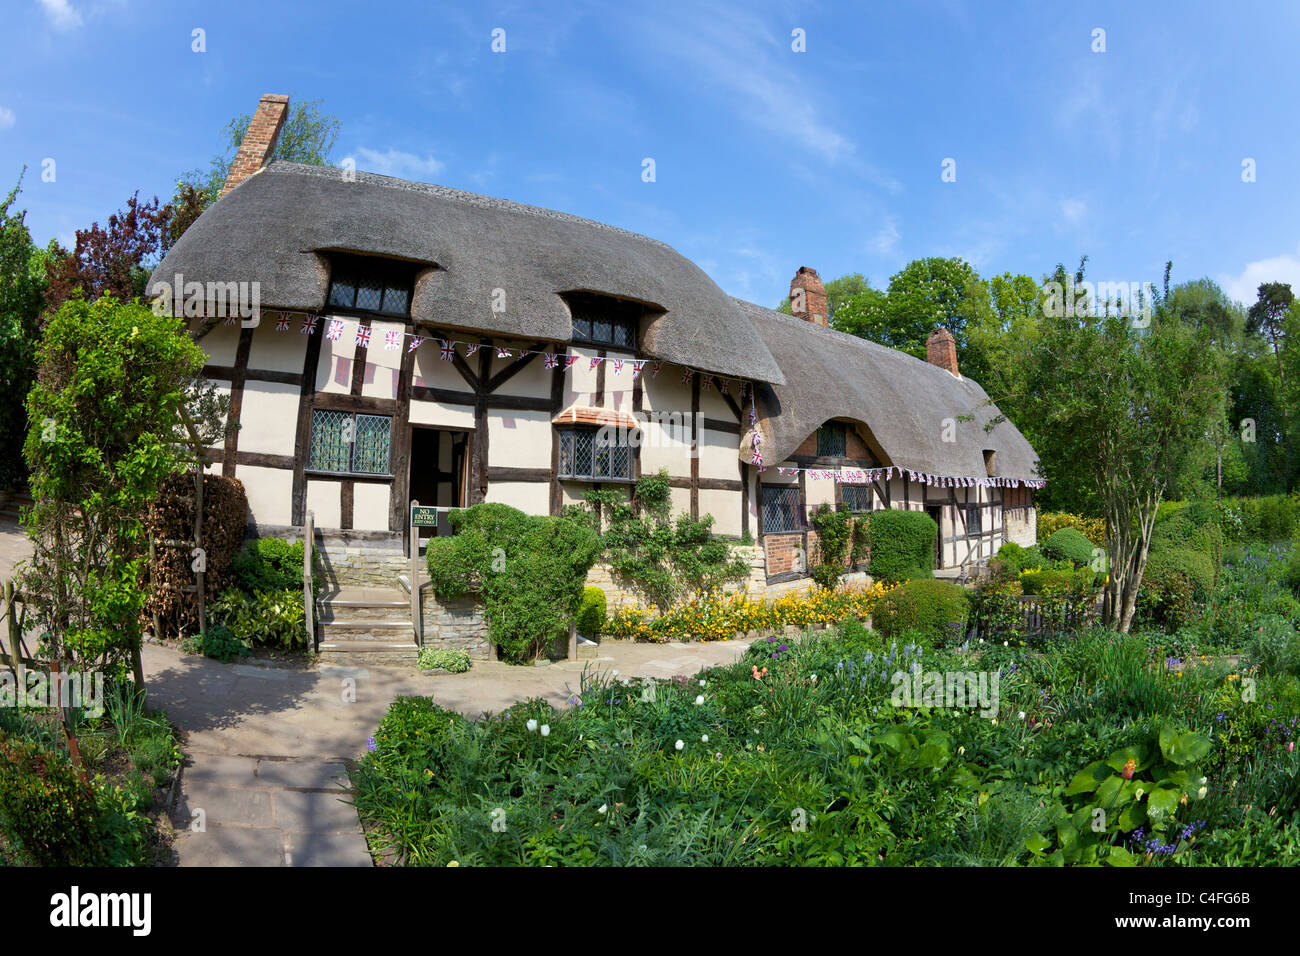 Anne Hathaway Hütte, Shottery, Stratford-upon-Avon, Warwickshire, England, UK, Vereinigtes Königreich, GB, Großbritannien, Stockfoto